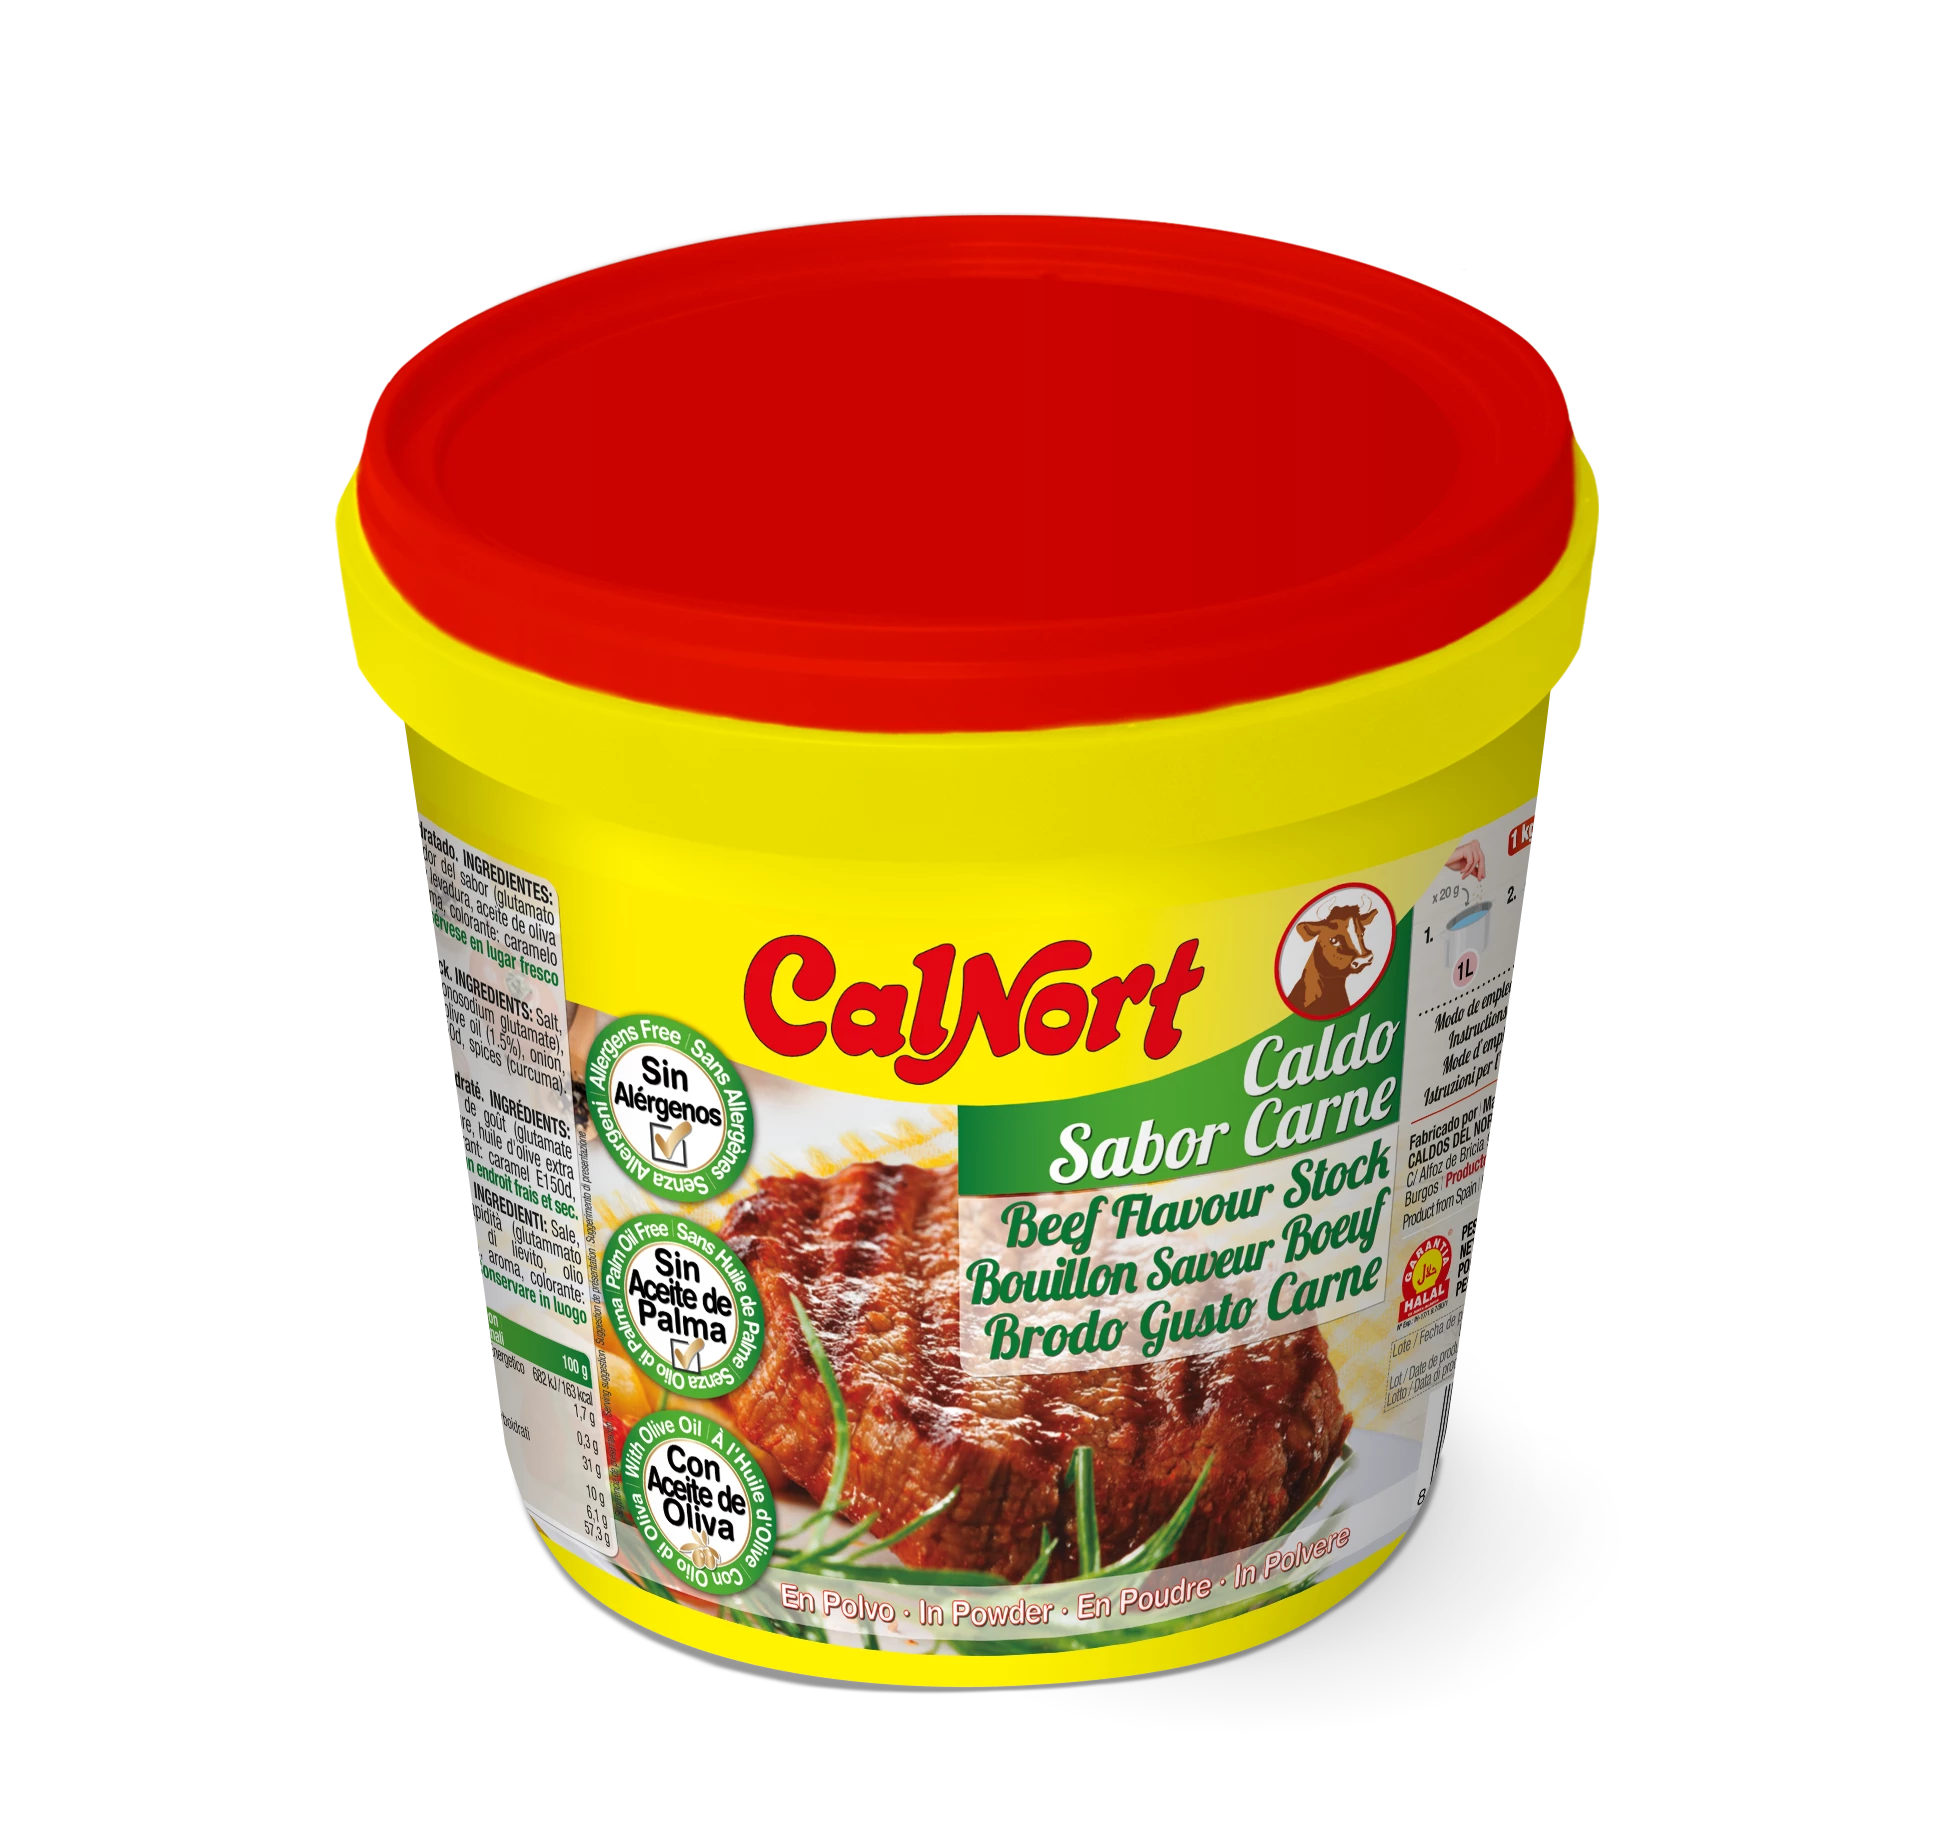 アレルギー物質を含まない牛肉風味のスープ 1 kg - CALNORT